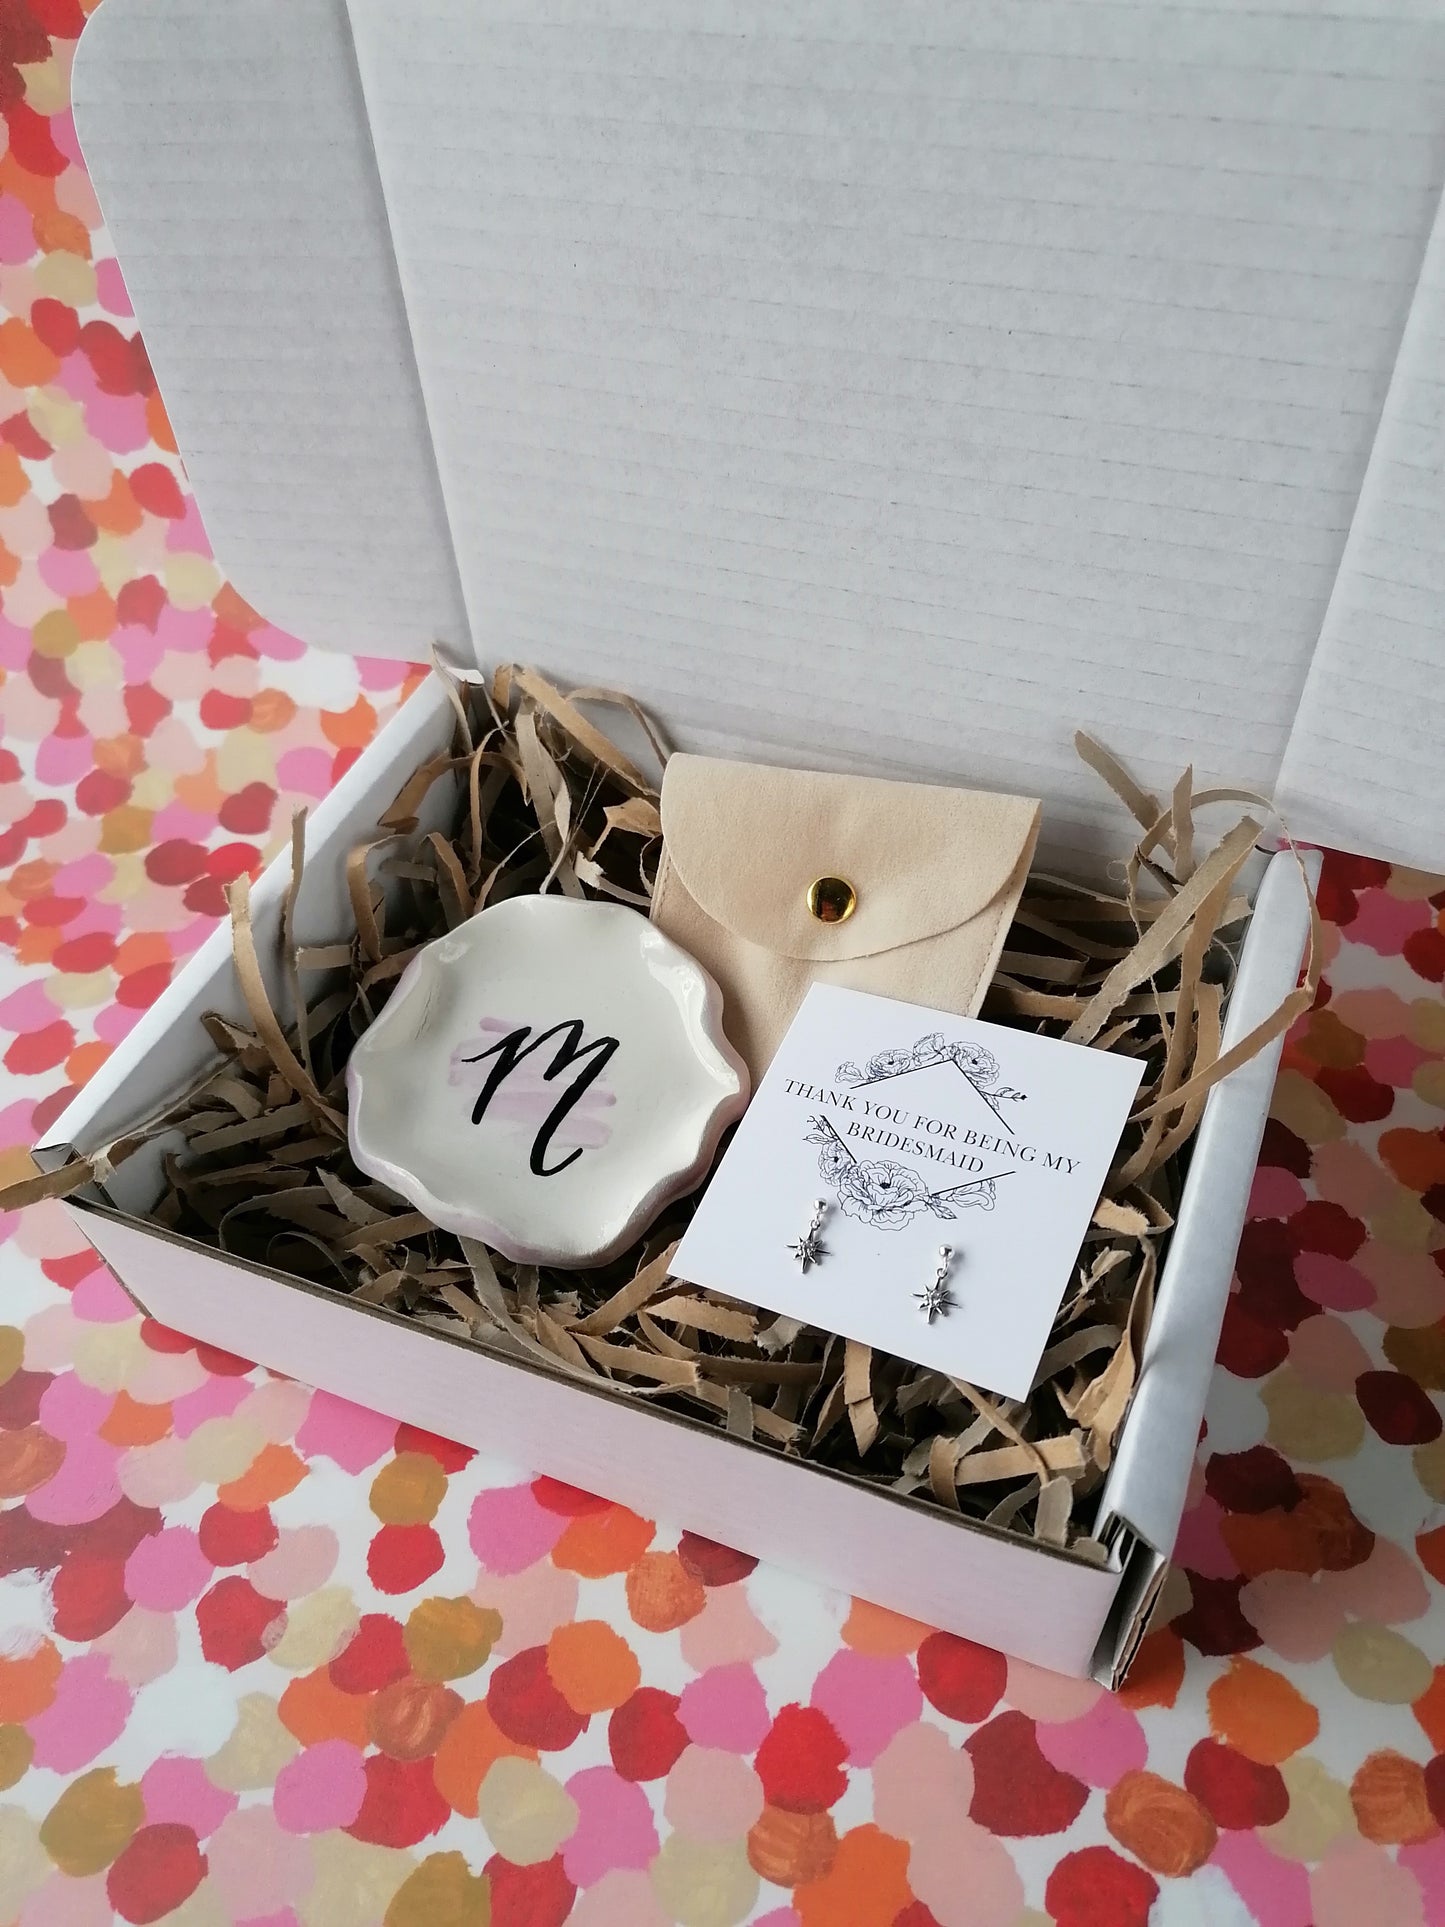 Tiny Star Bridesmaid Gift Box